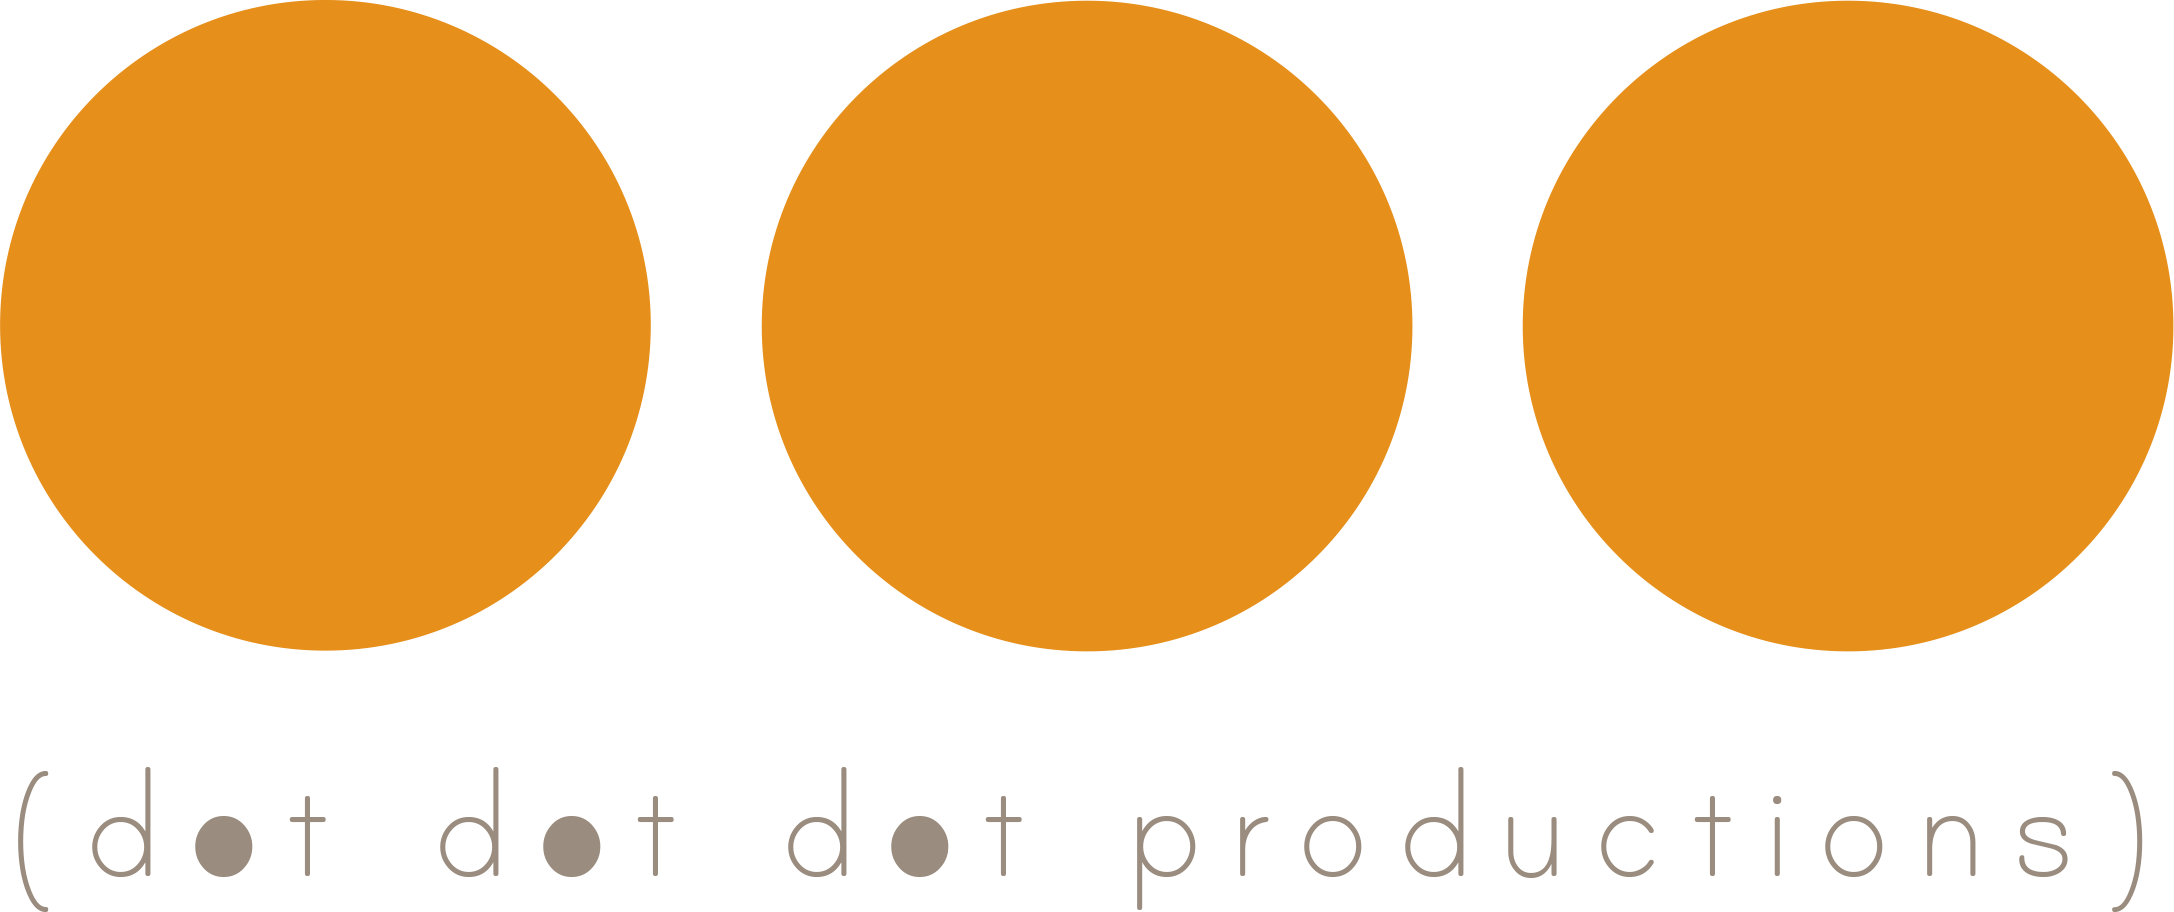 dot dot dot productions